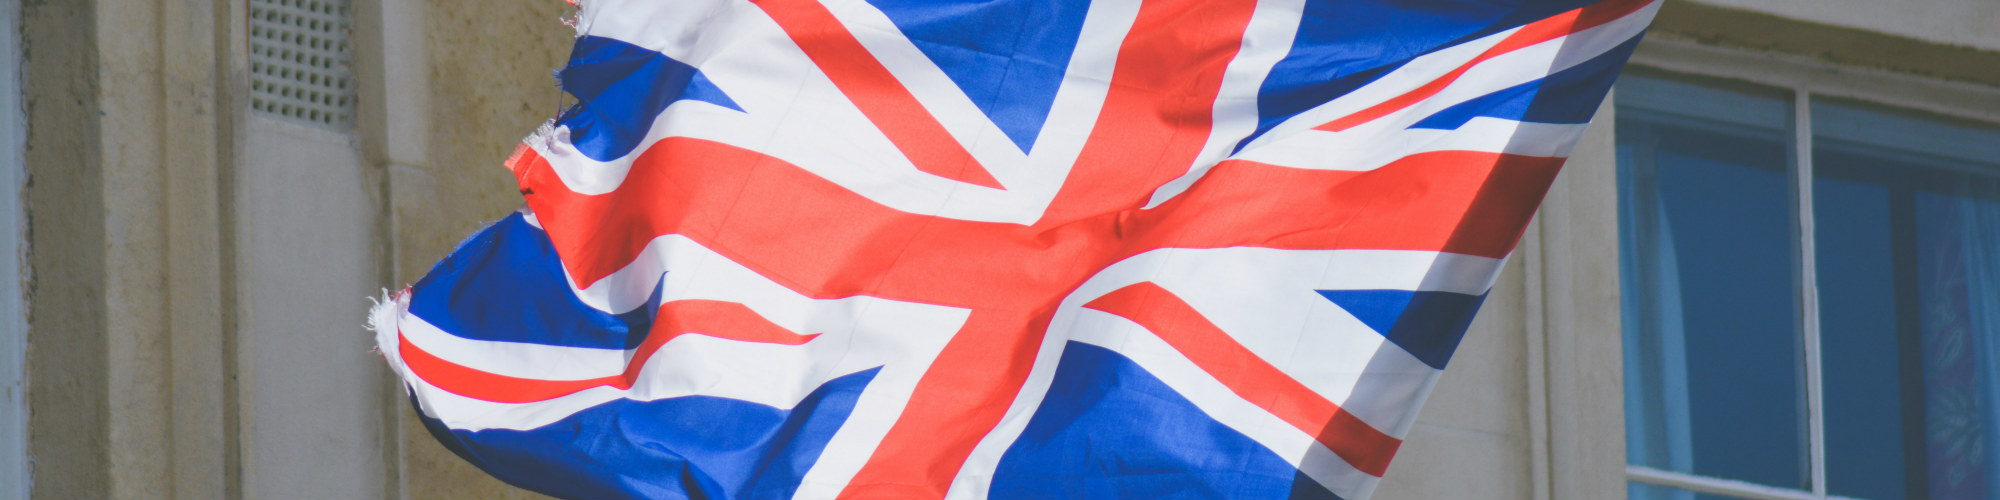 Murdo Fraser MSP: Our still United Kingdom – A ‘quasi-federal’ future?